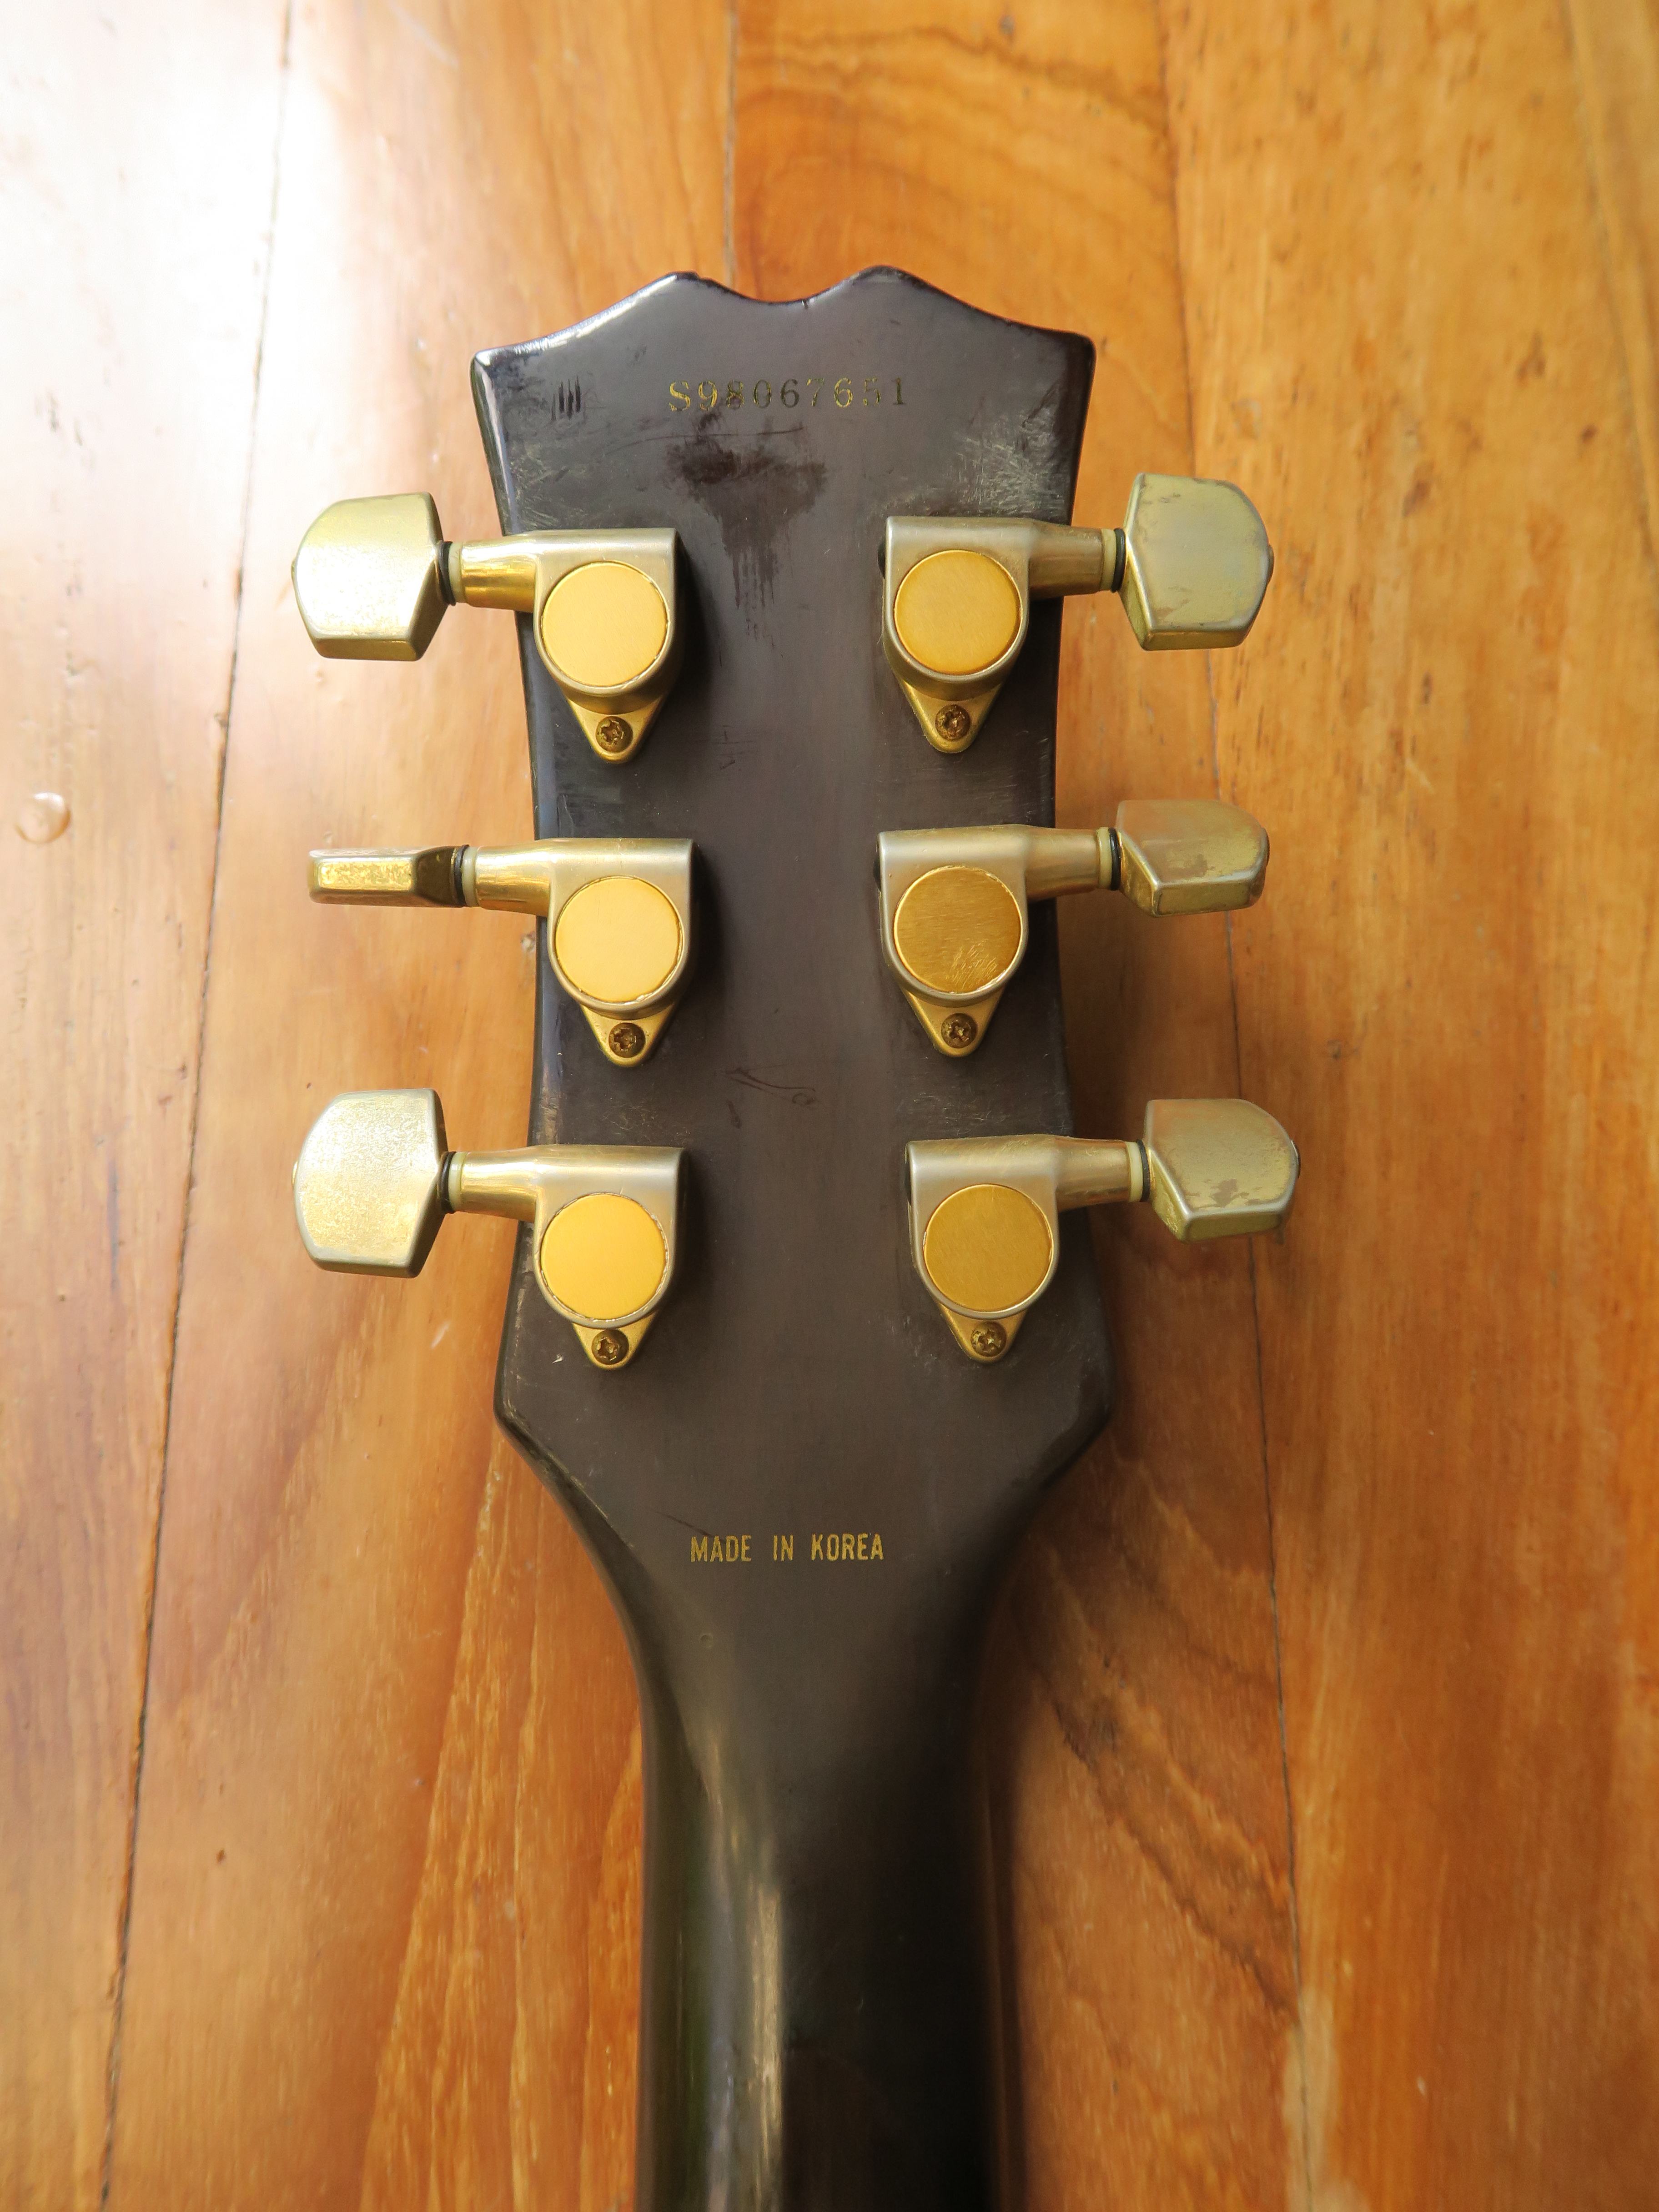 samick guitar korea made no serial number